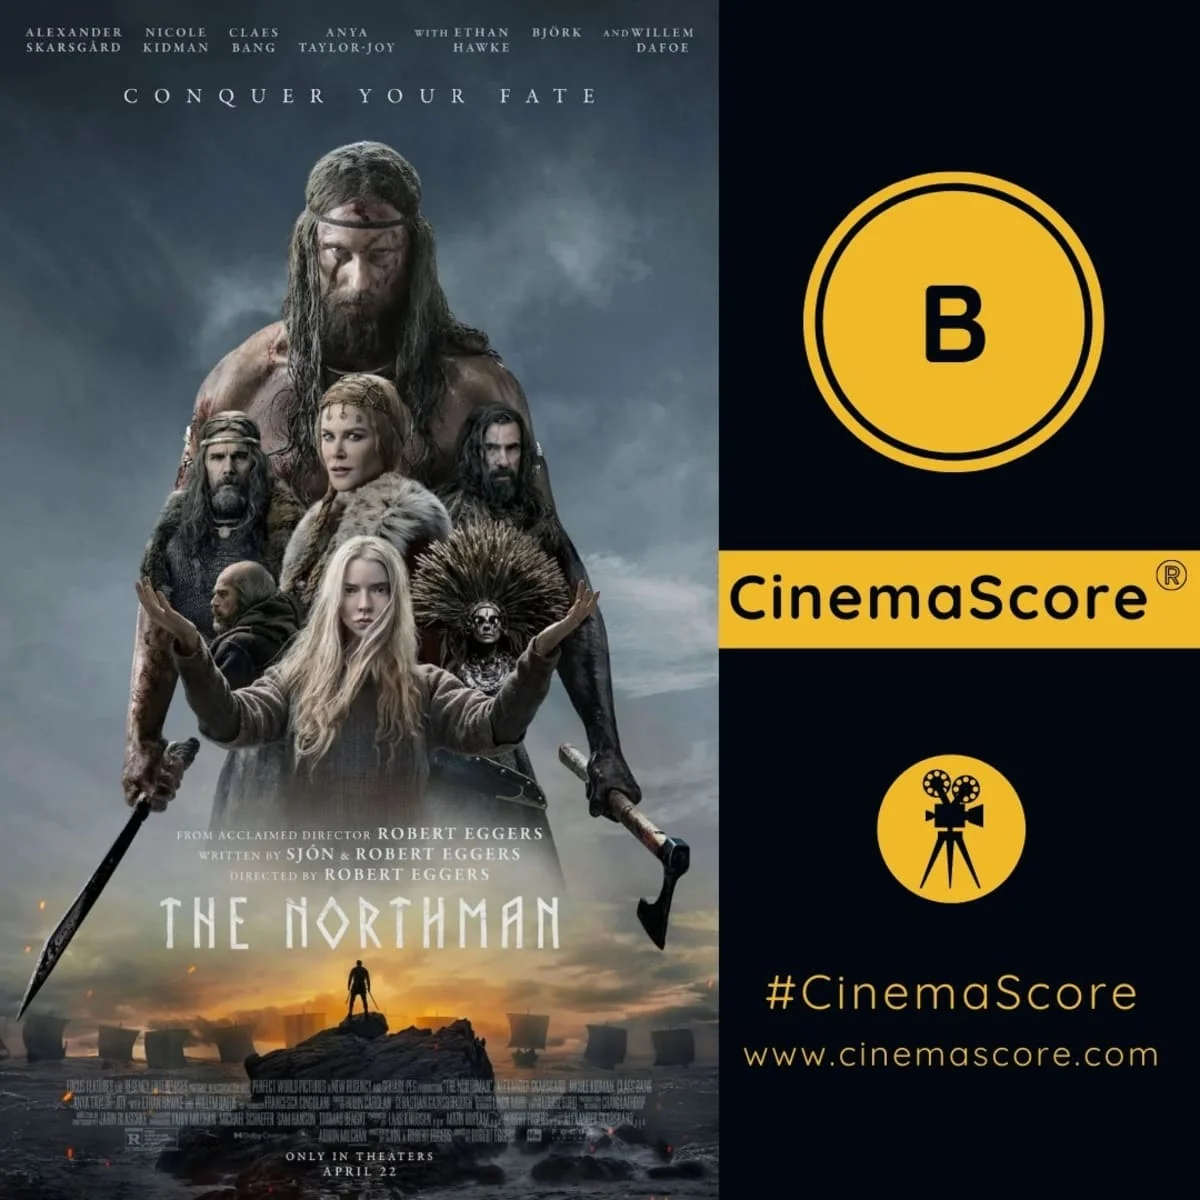 «Варяг» и новый фильм с Кейджем получили положительные оценки зрителей на CinemaScore - фото 1